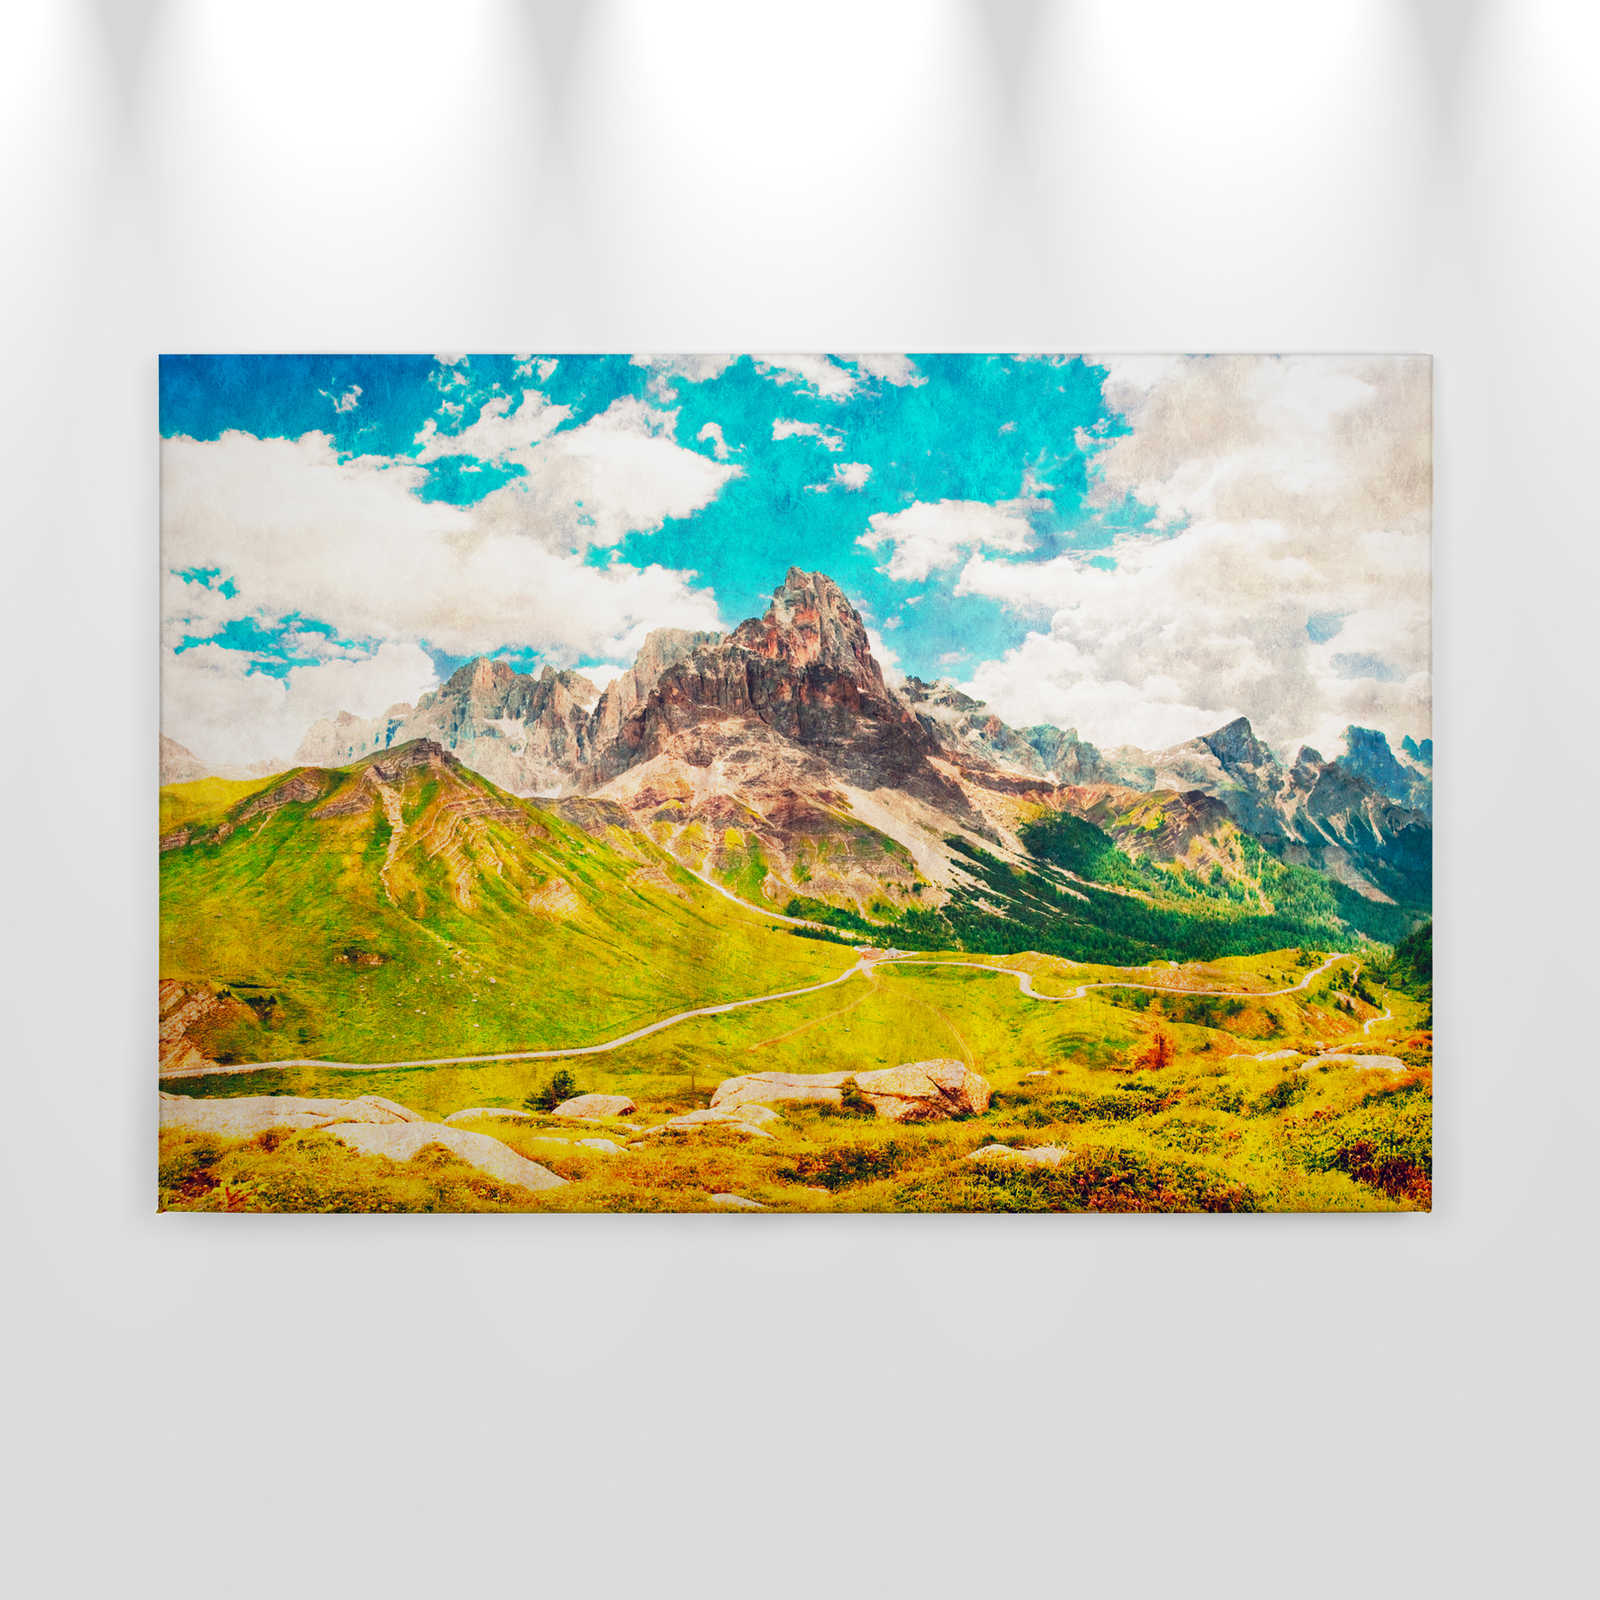             Dolomiti 1 - Leinwandbild Dolomiten Retro Fotografie - Löschpapier – 0,90 m x 0,60 m
        